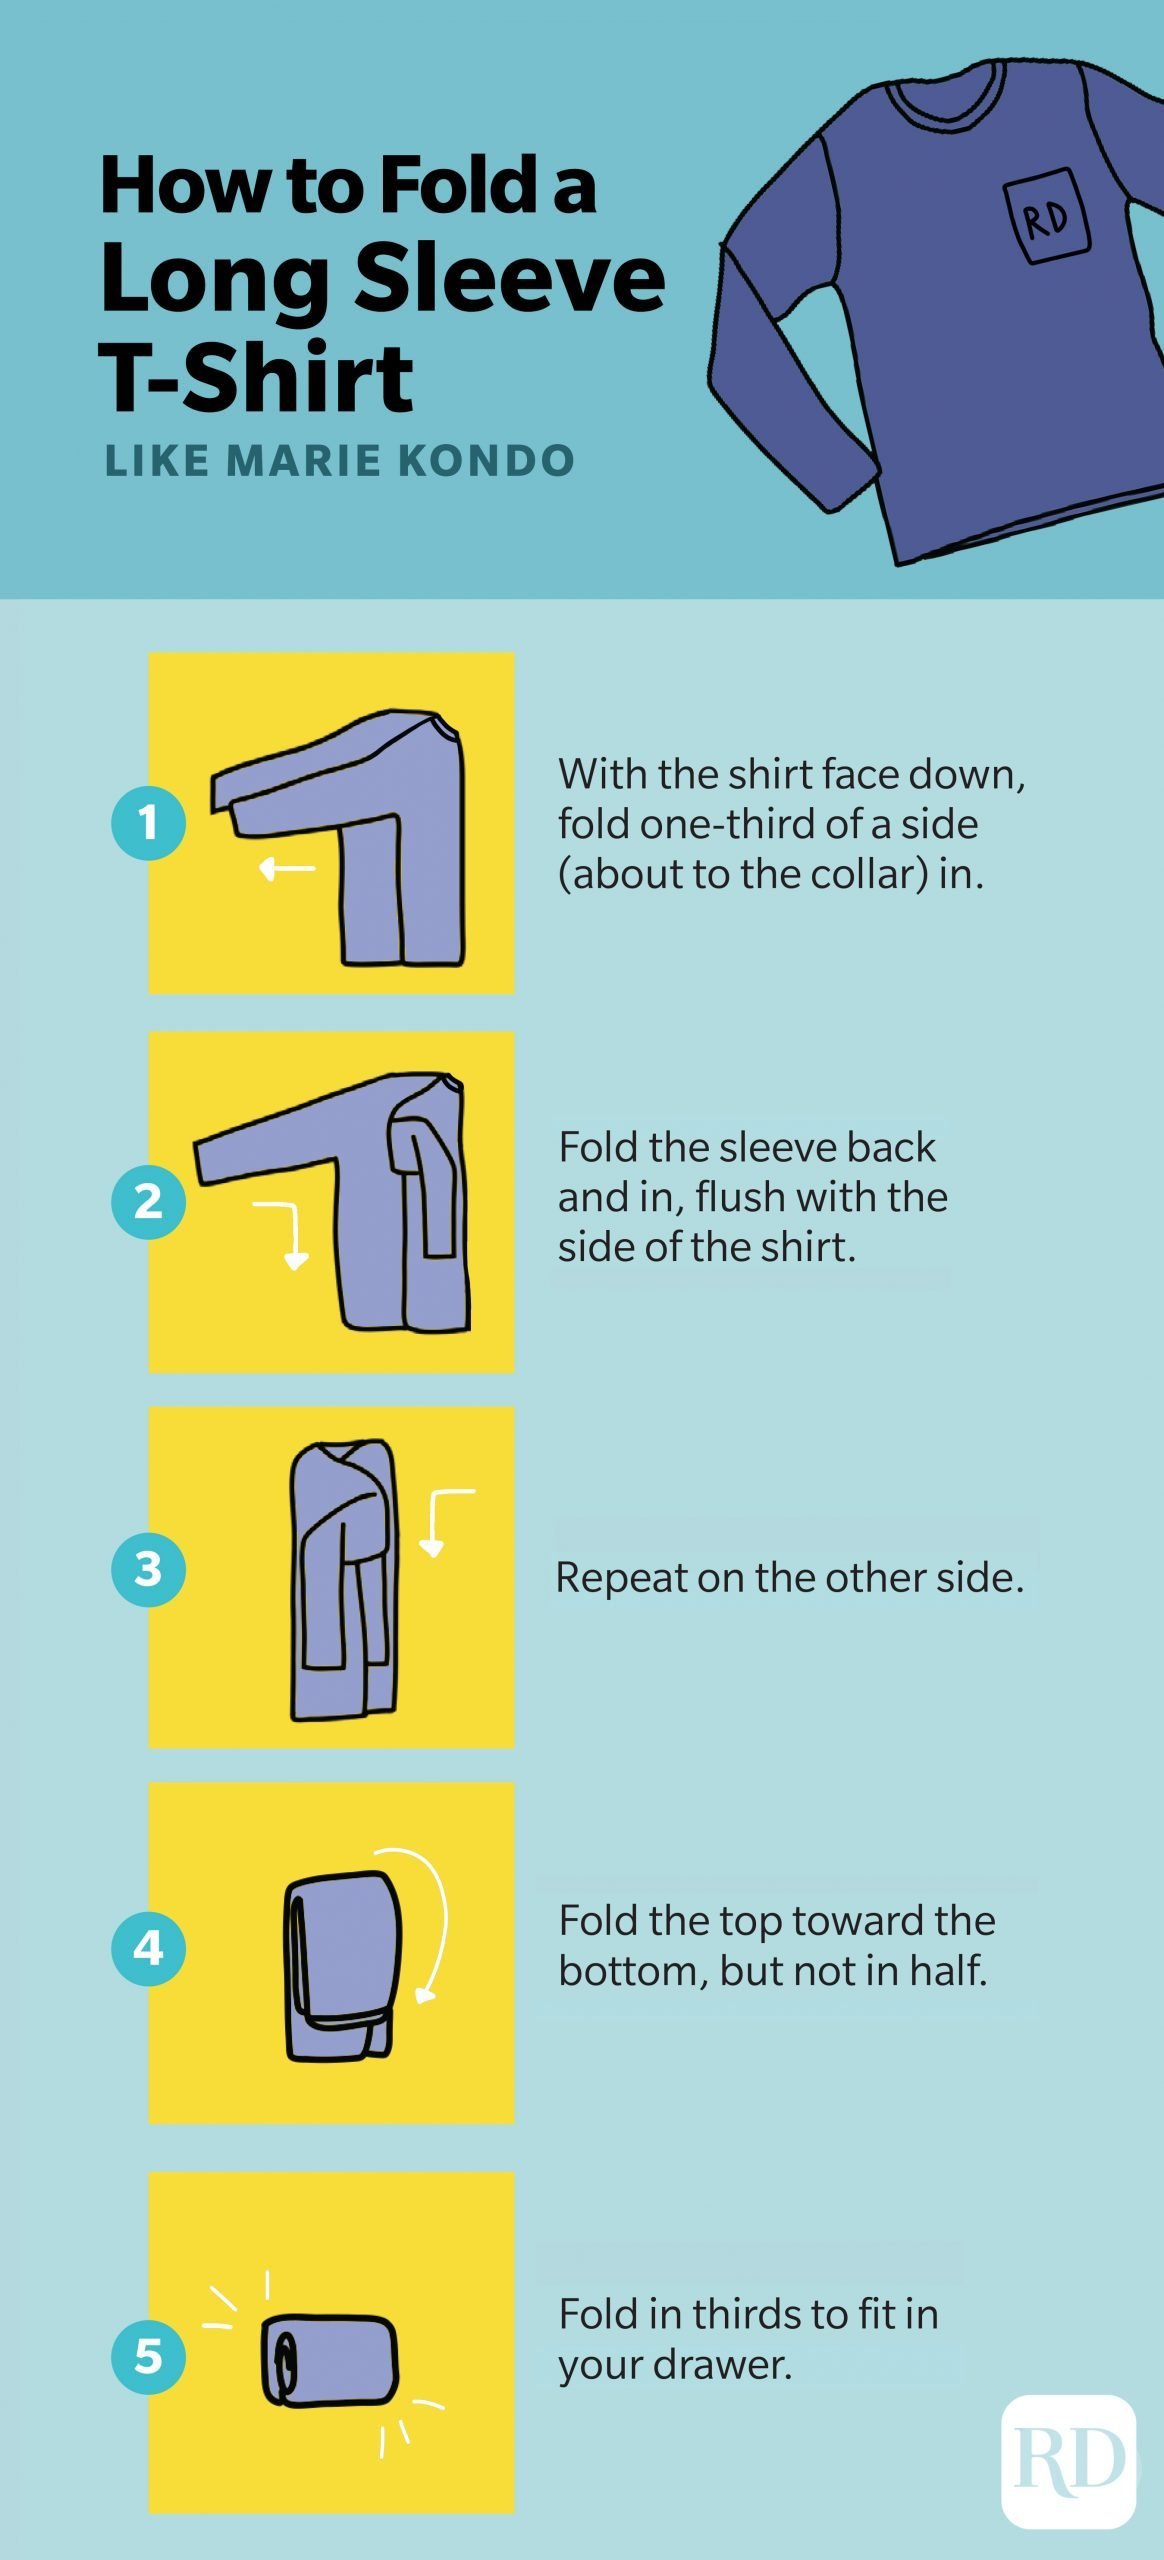 How to fold a long sleeve shirt like Marie Kondo infographic